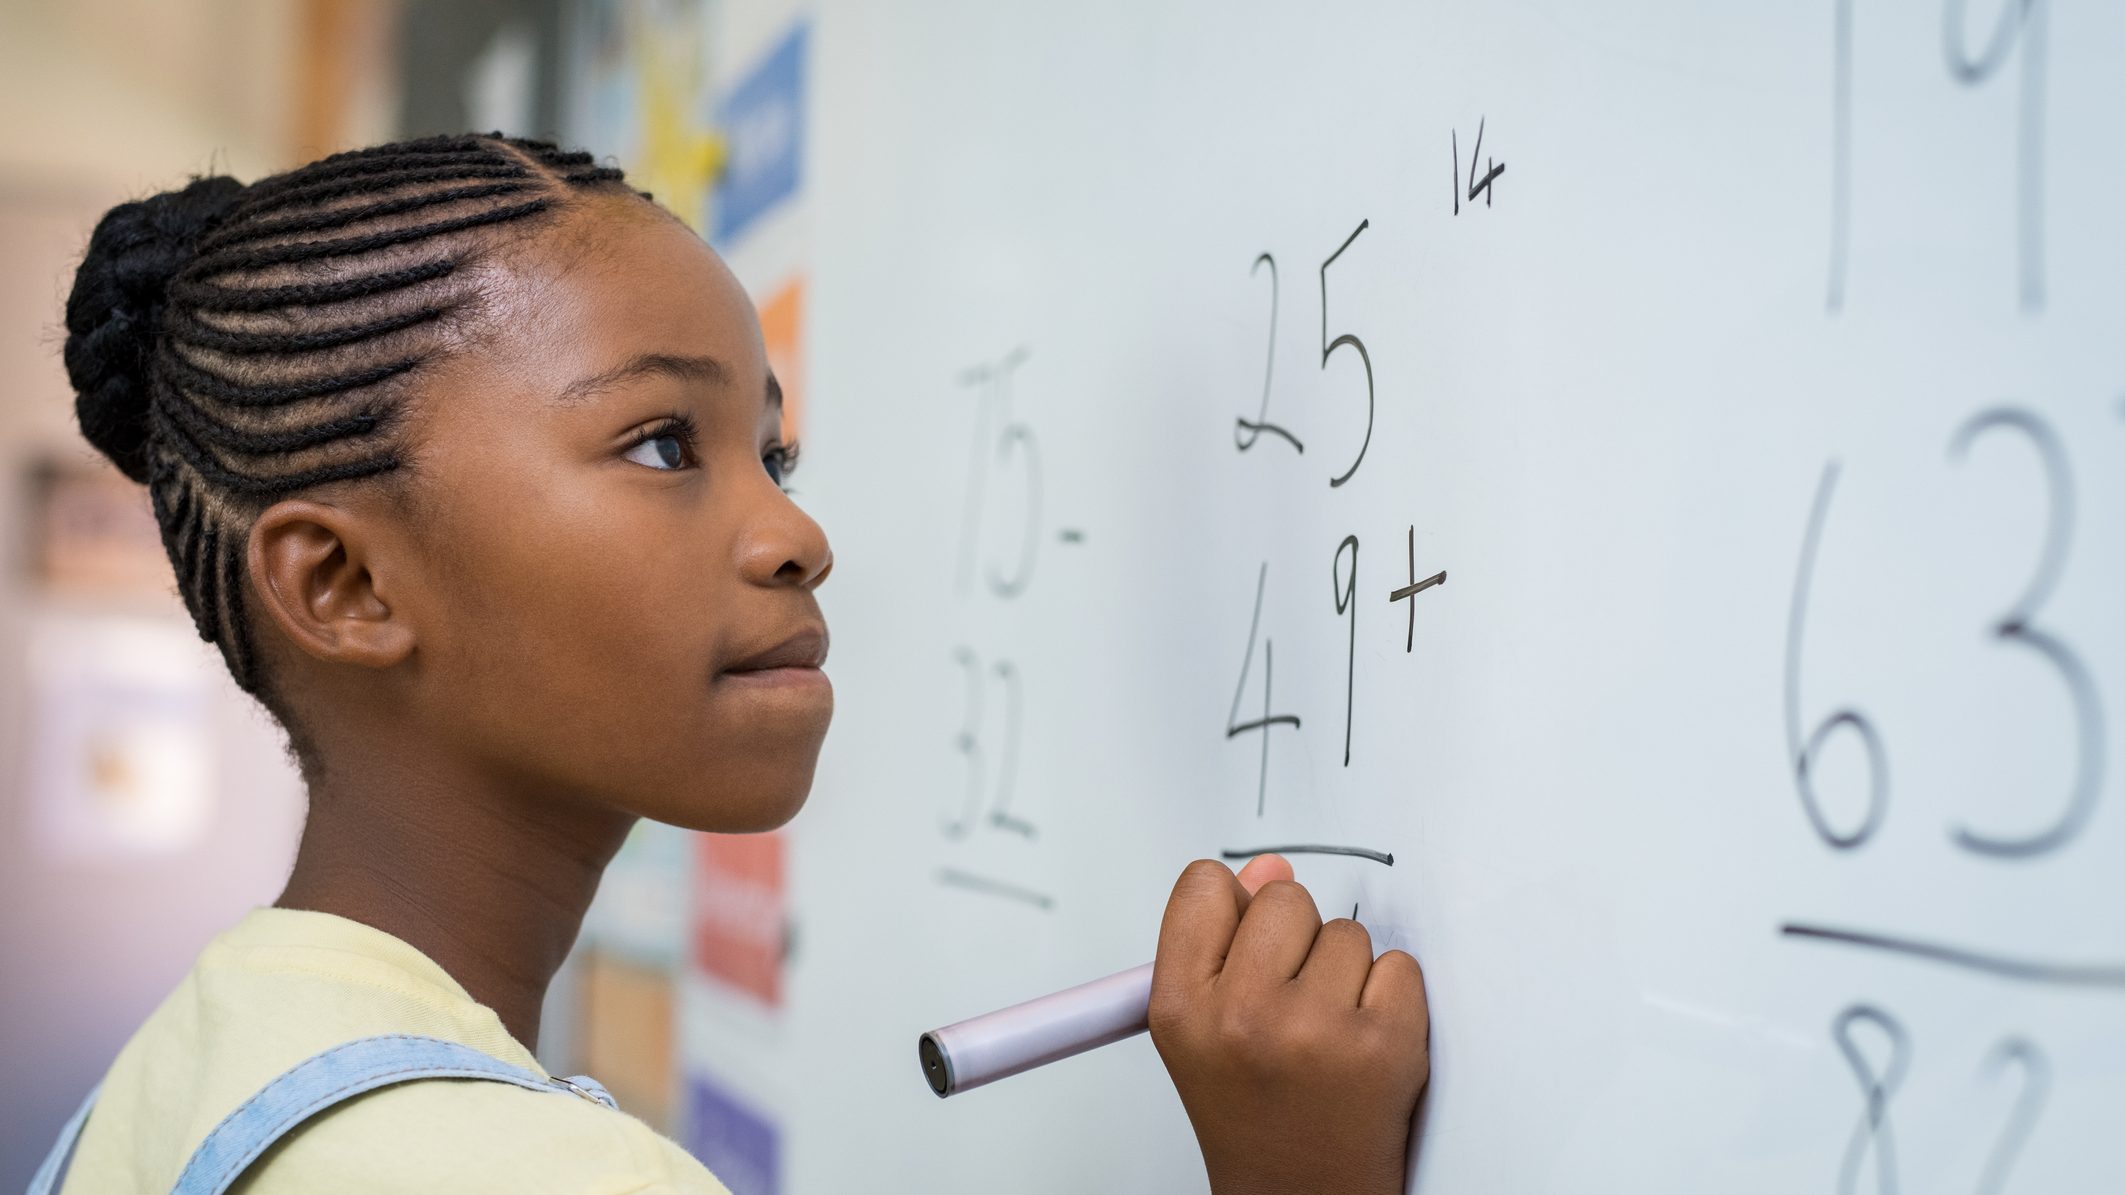 男女平等が達成されたと考える数学教師ほど「女子生徒の数学能力」に対して偏見がある | 最新調査で判明した「無意識の偏見」